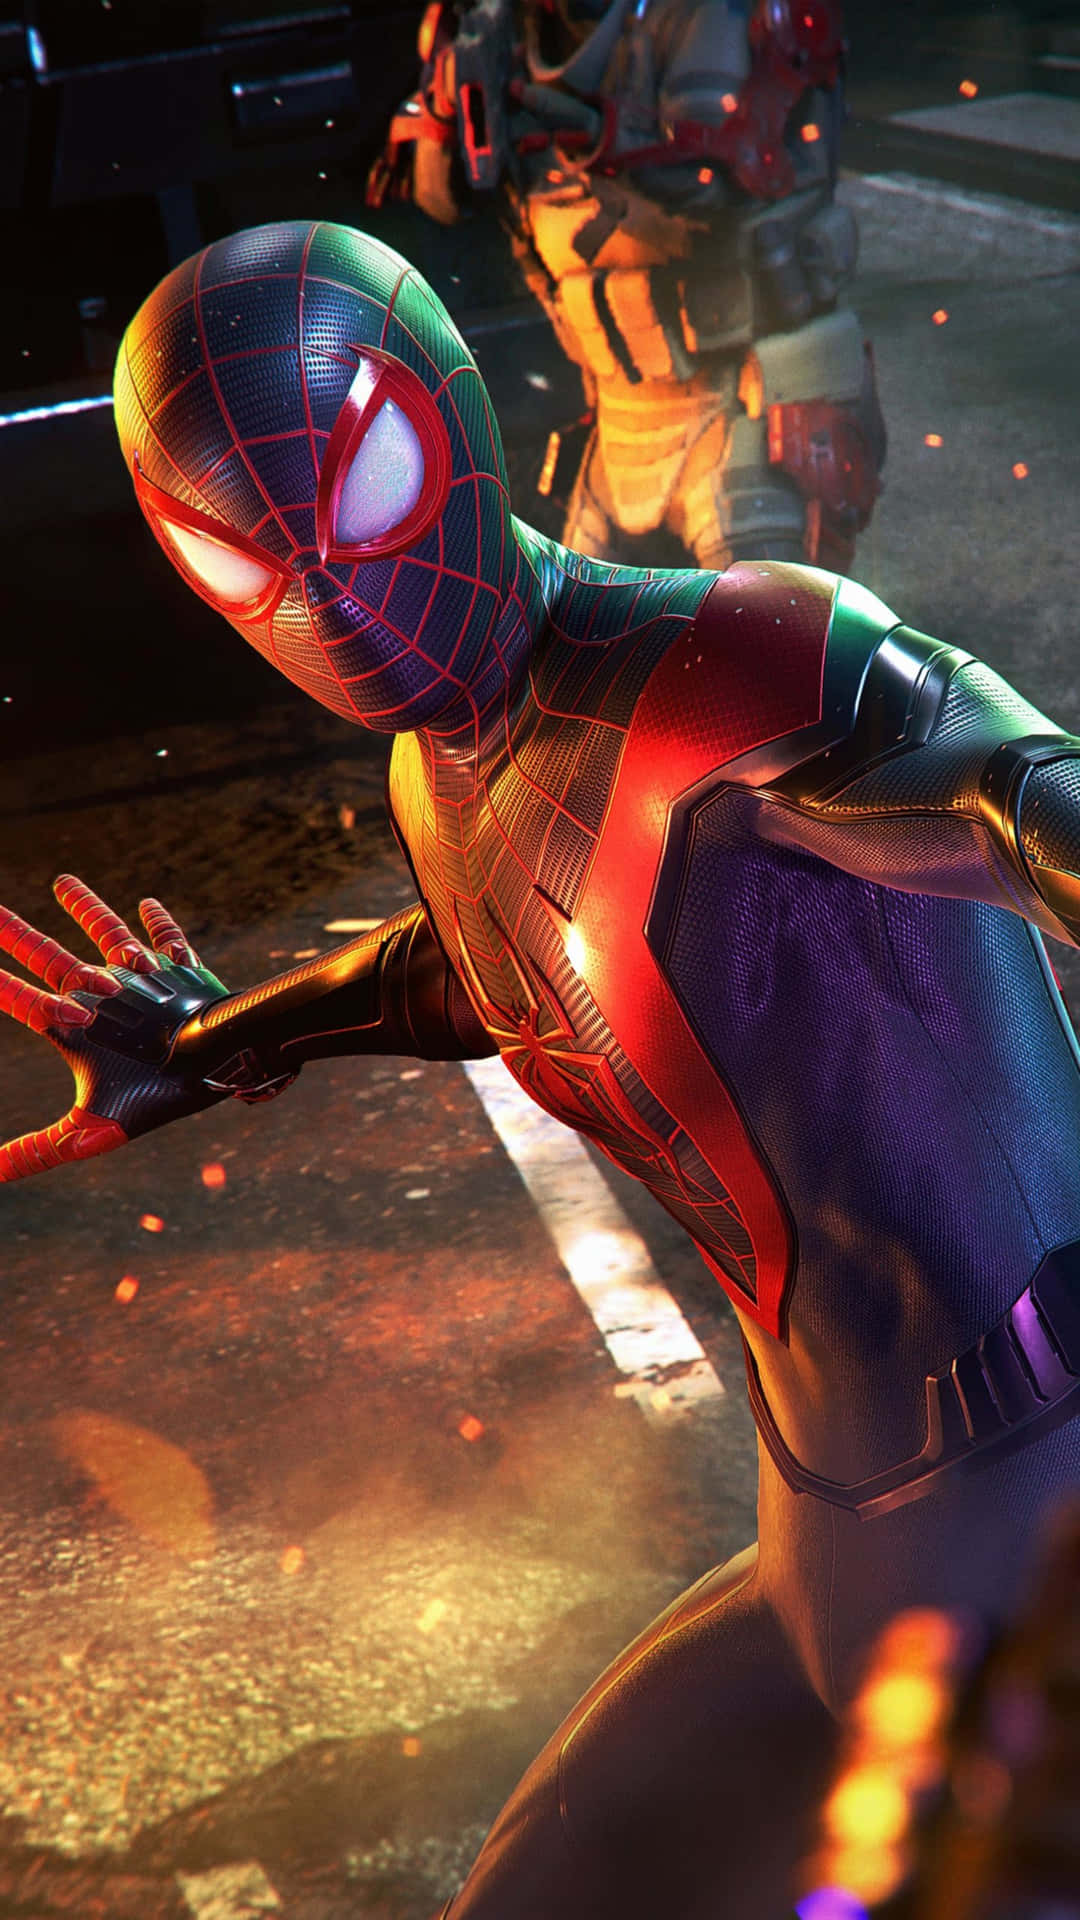 Screenshotvon Spider-man: A New Universe (spider-man: Into The Spider-verse) Wallpaper